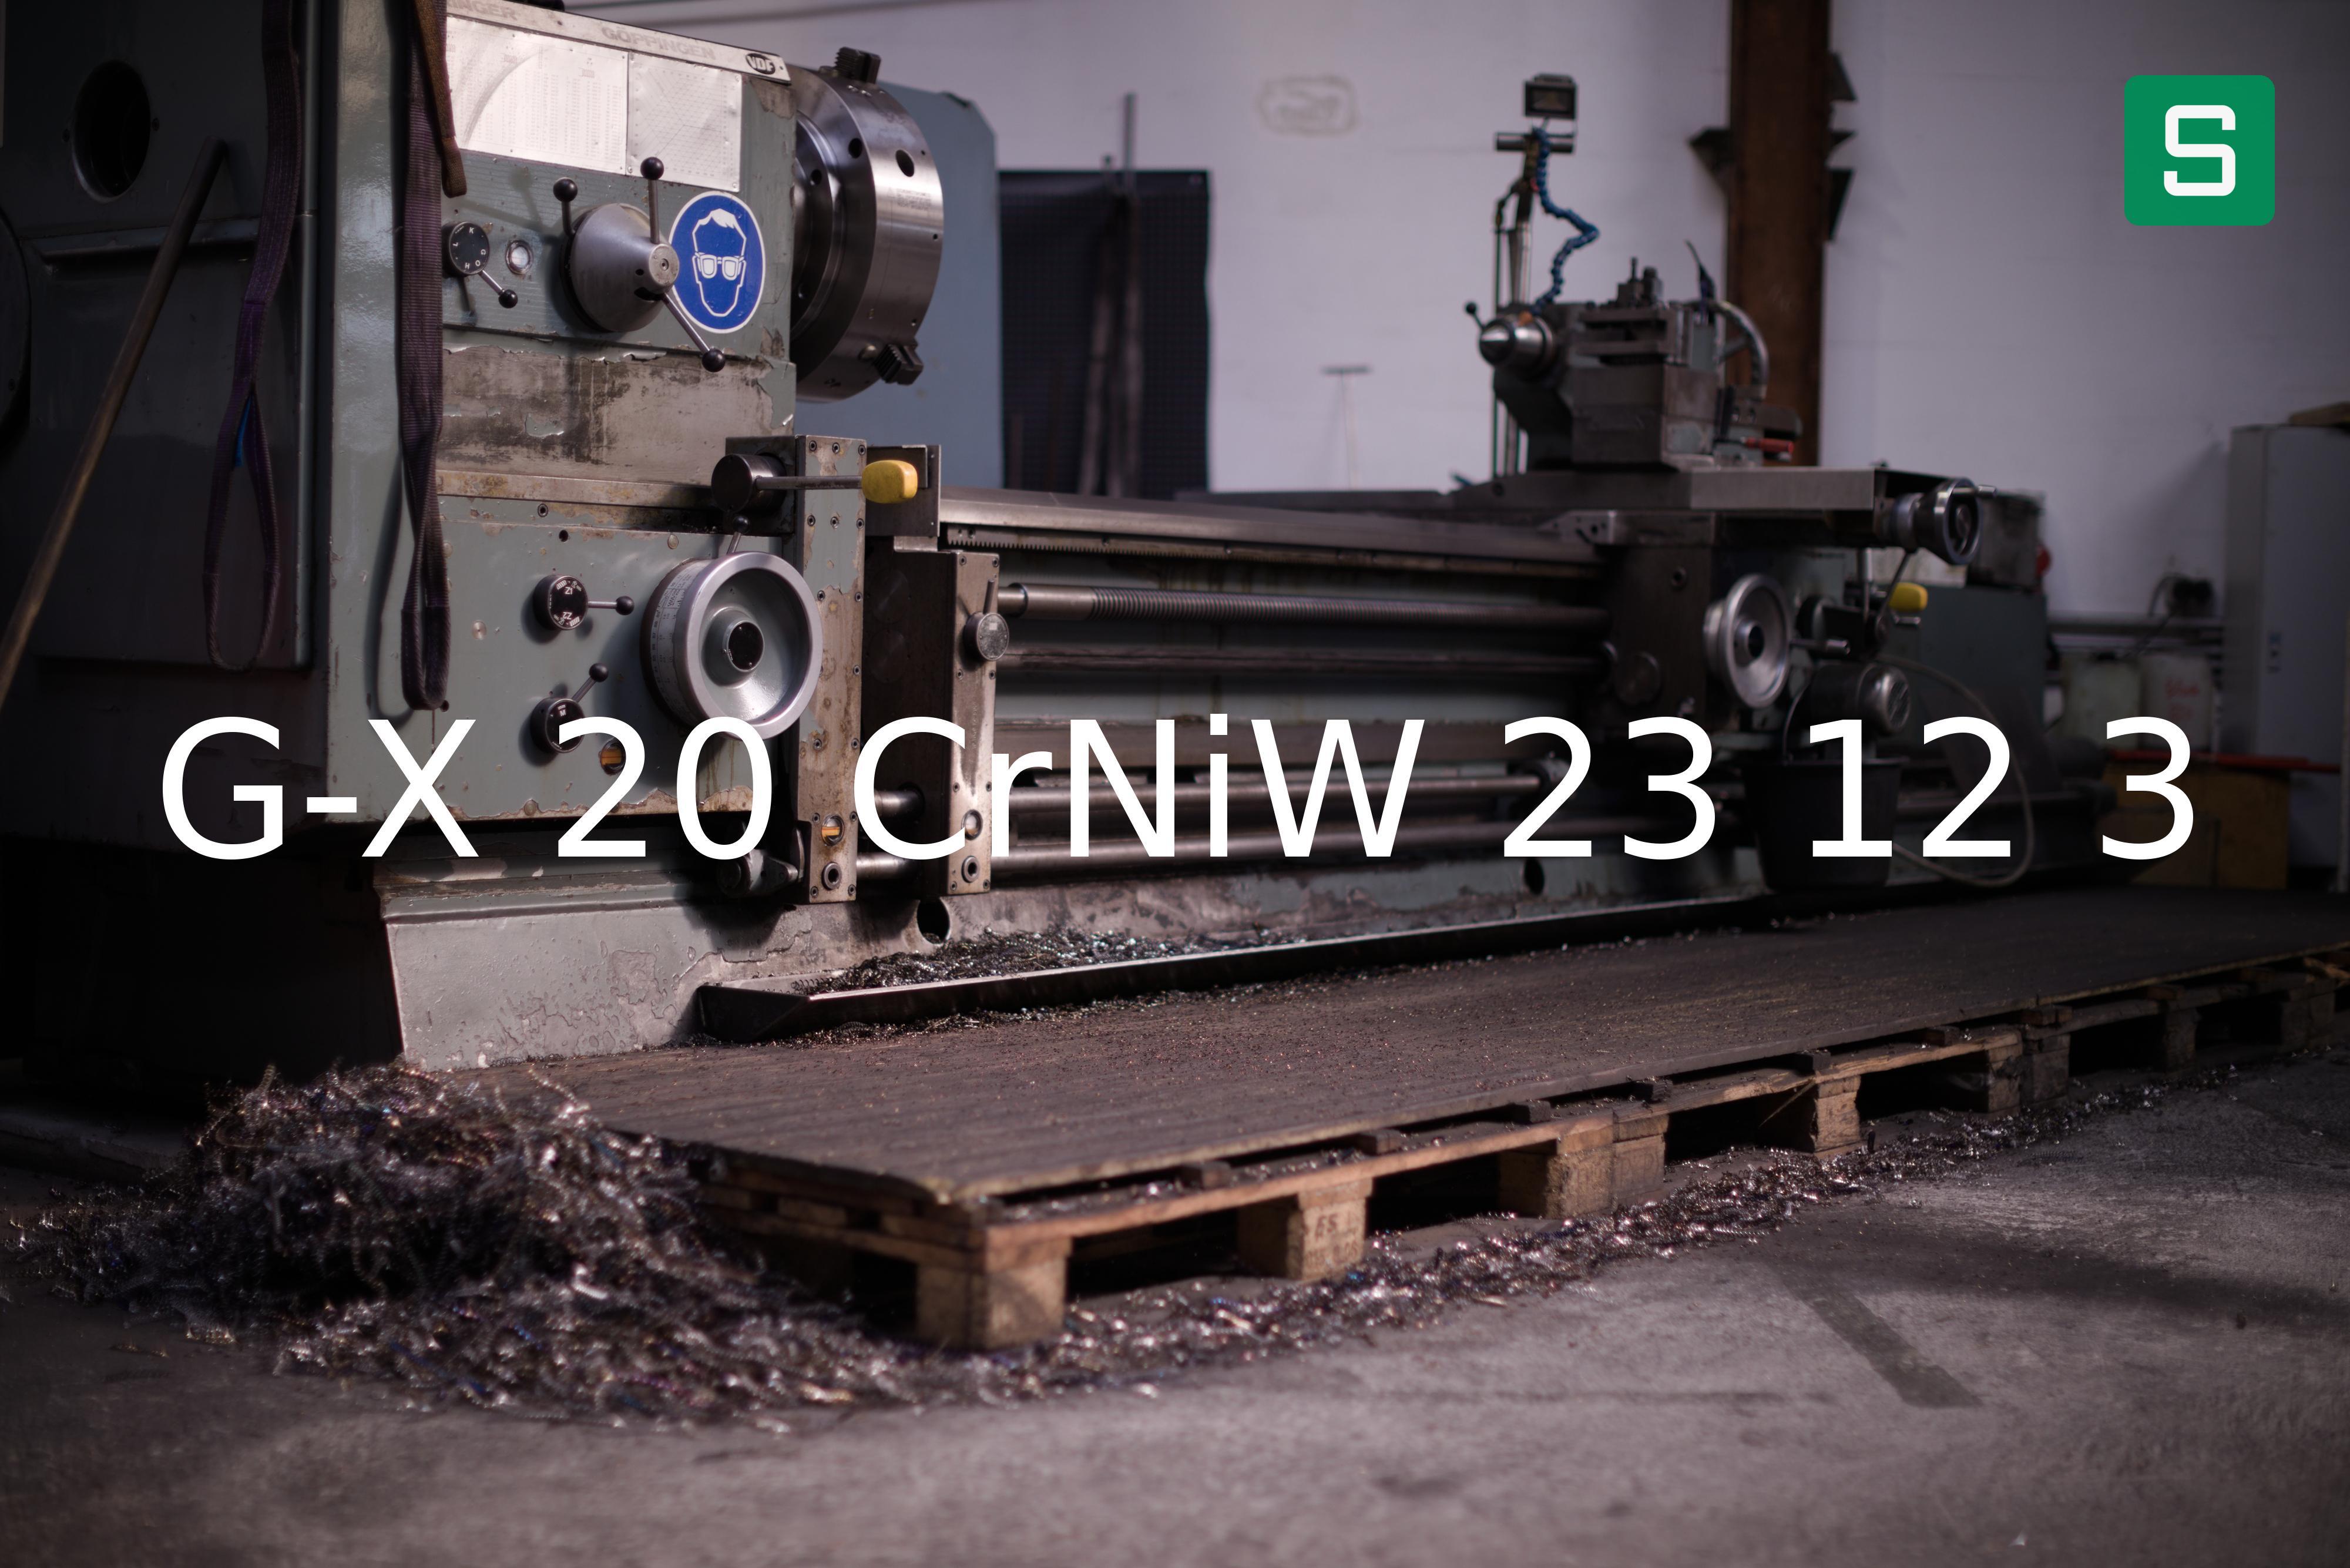 Material de Acero: G-X 20 CrNiW 23 12 3